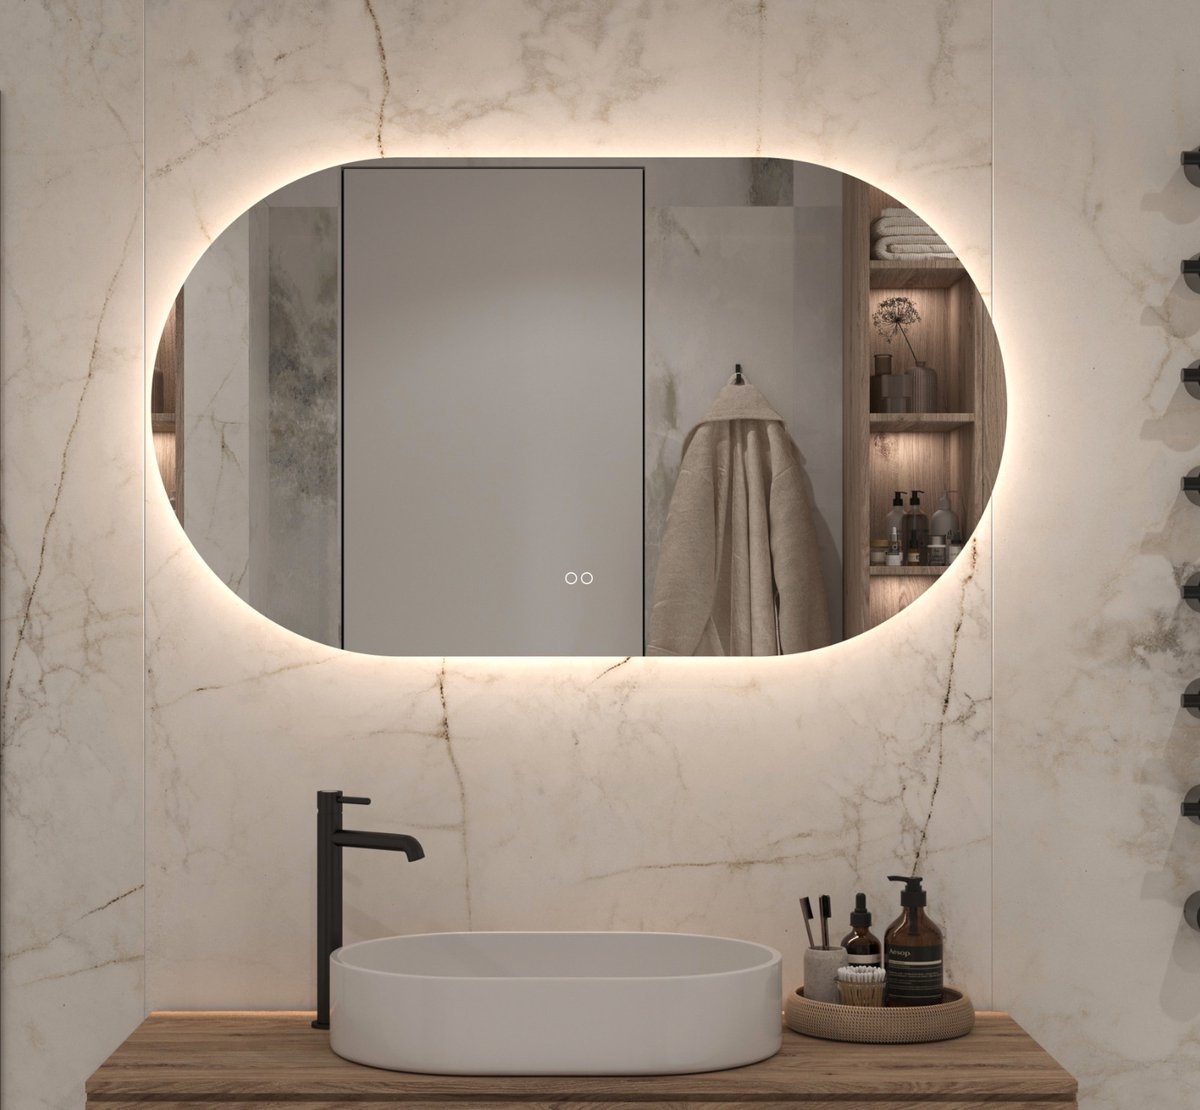 Ovale badkamerspiegel met indirecte verlichting, verwarming, instelbare lichtkleur en dimfunctie 120×70 cm